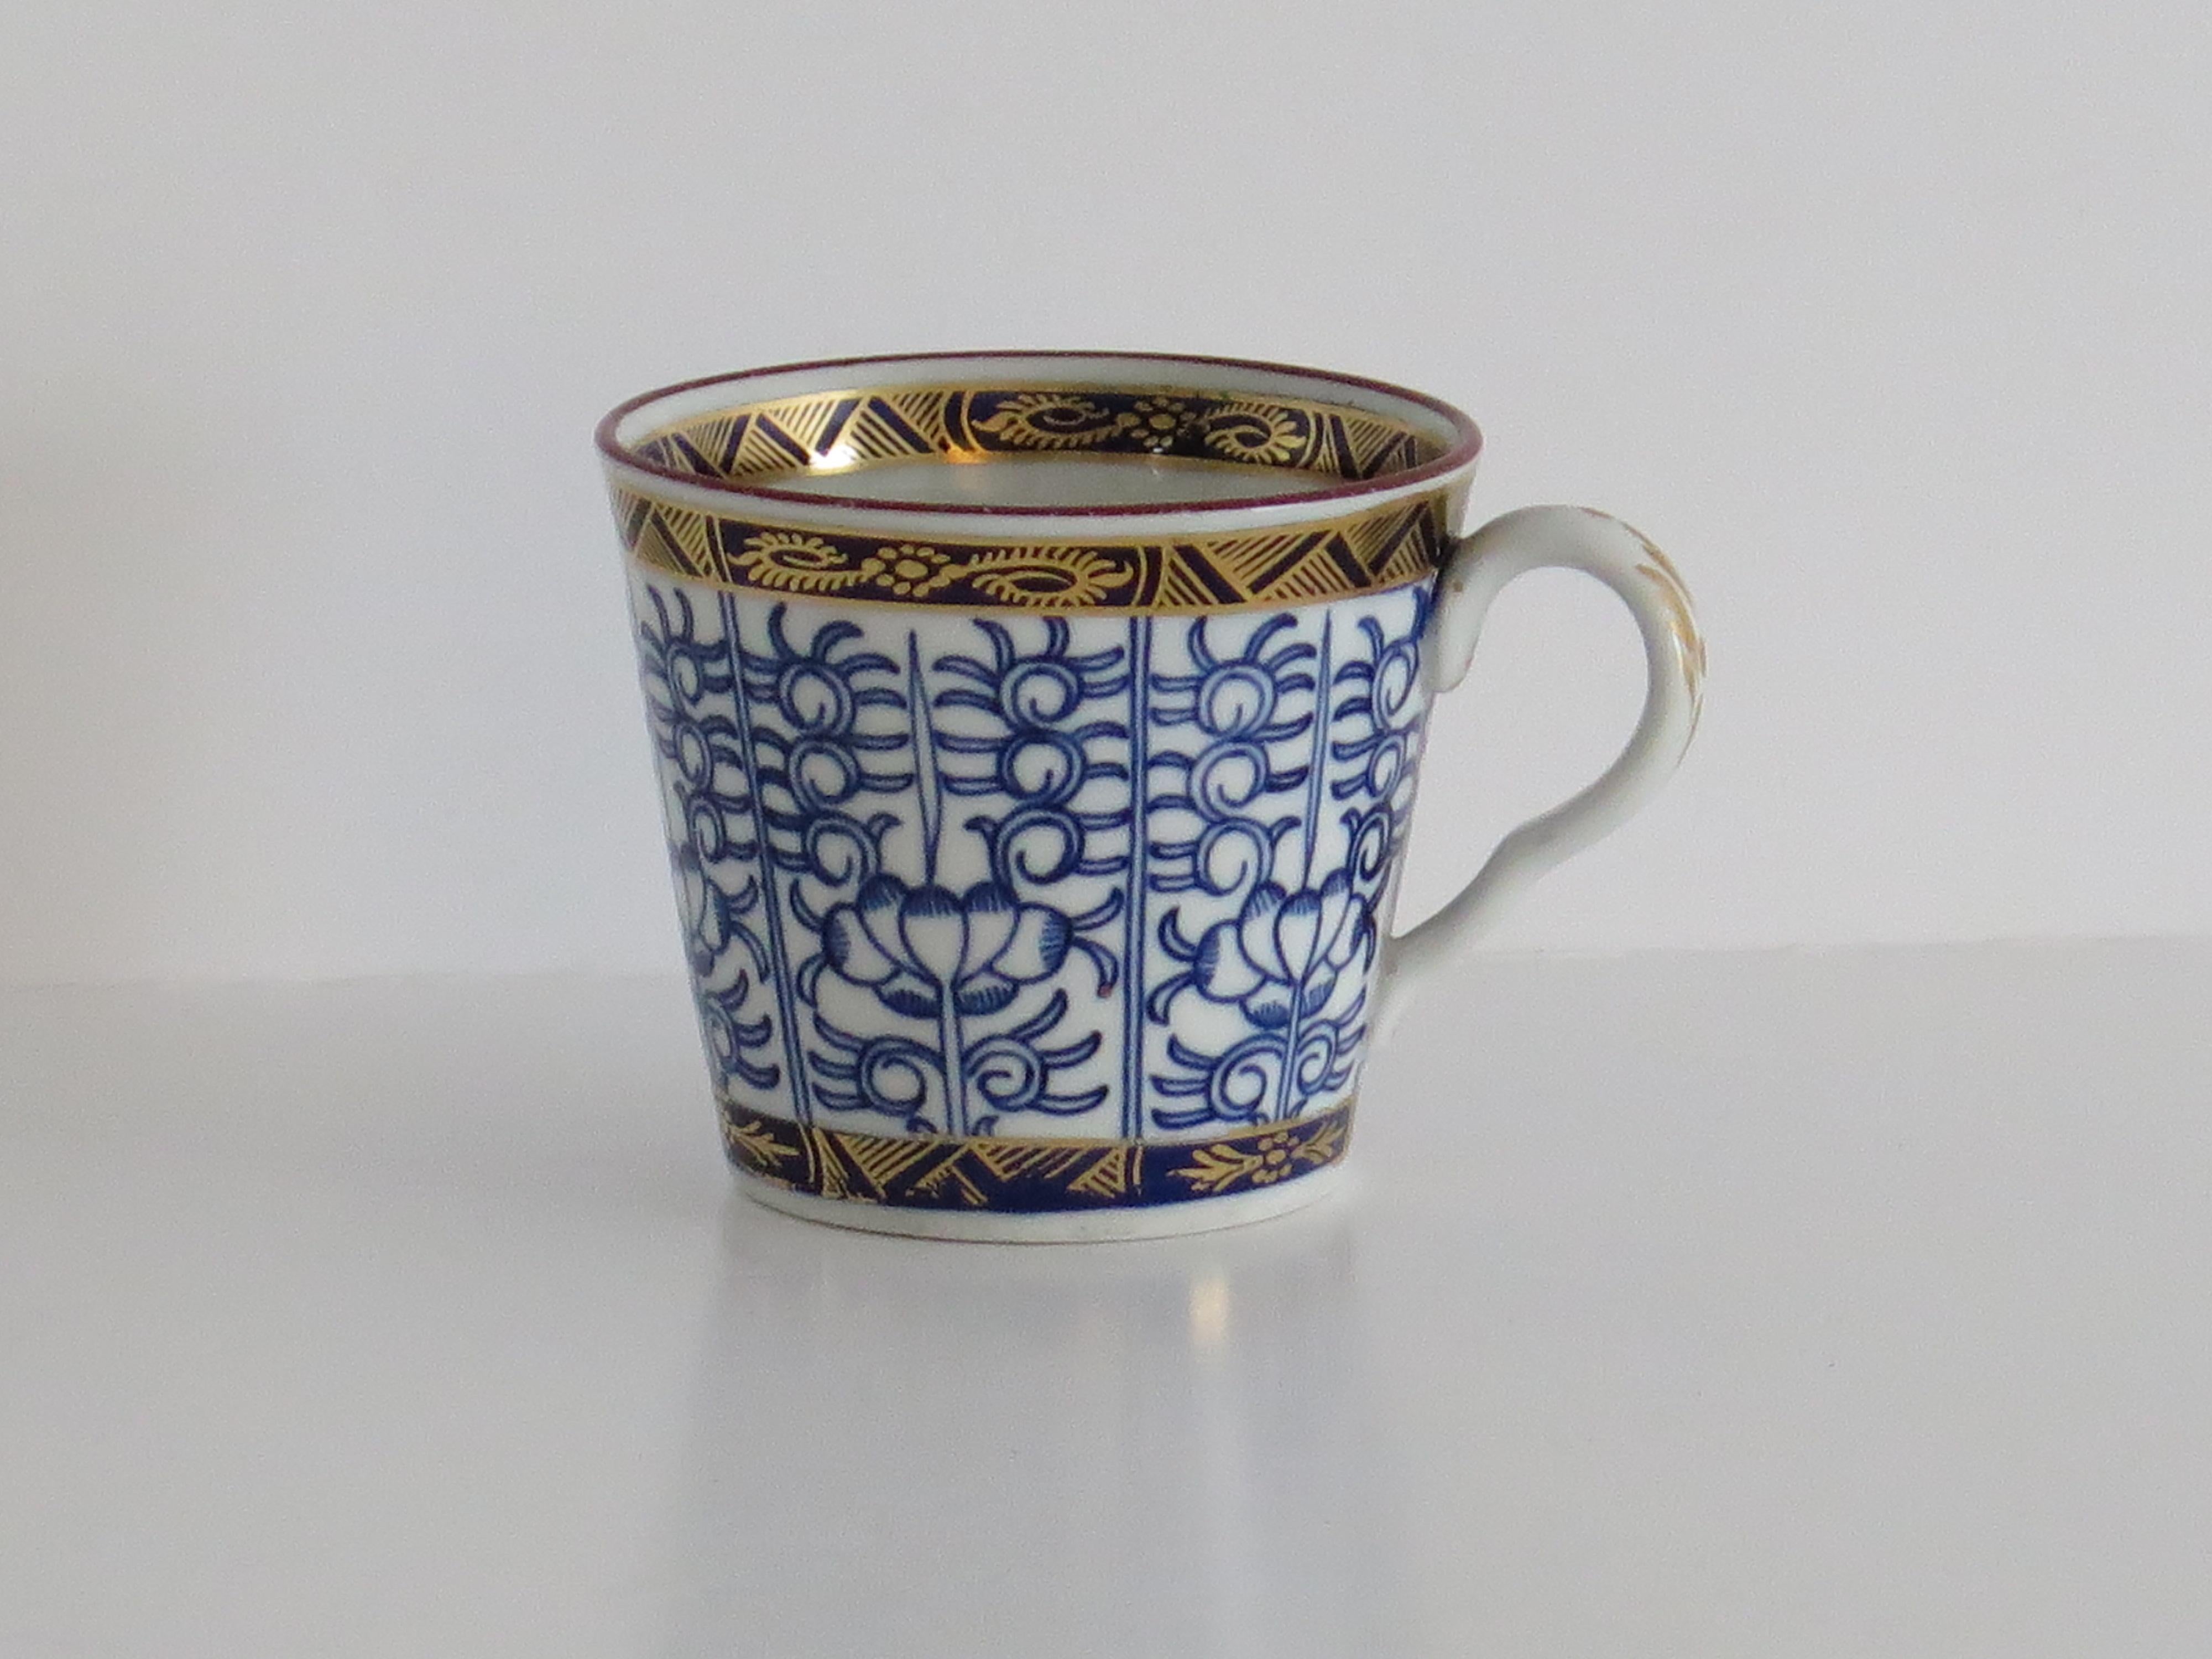 Dies ist eine sehr gute harte Paste Porzellan frühen Coffee Can oder Tasse mit einer Schleife Griff, Hand in der Royal Lily Muster von Worcester während der Barr-Periode dekoriert, voll auf die Basis markiert und aus ca. 1792 - 1807.

Das Stück ist